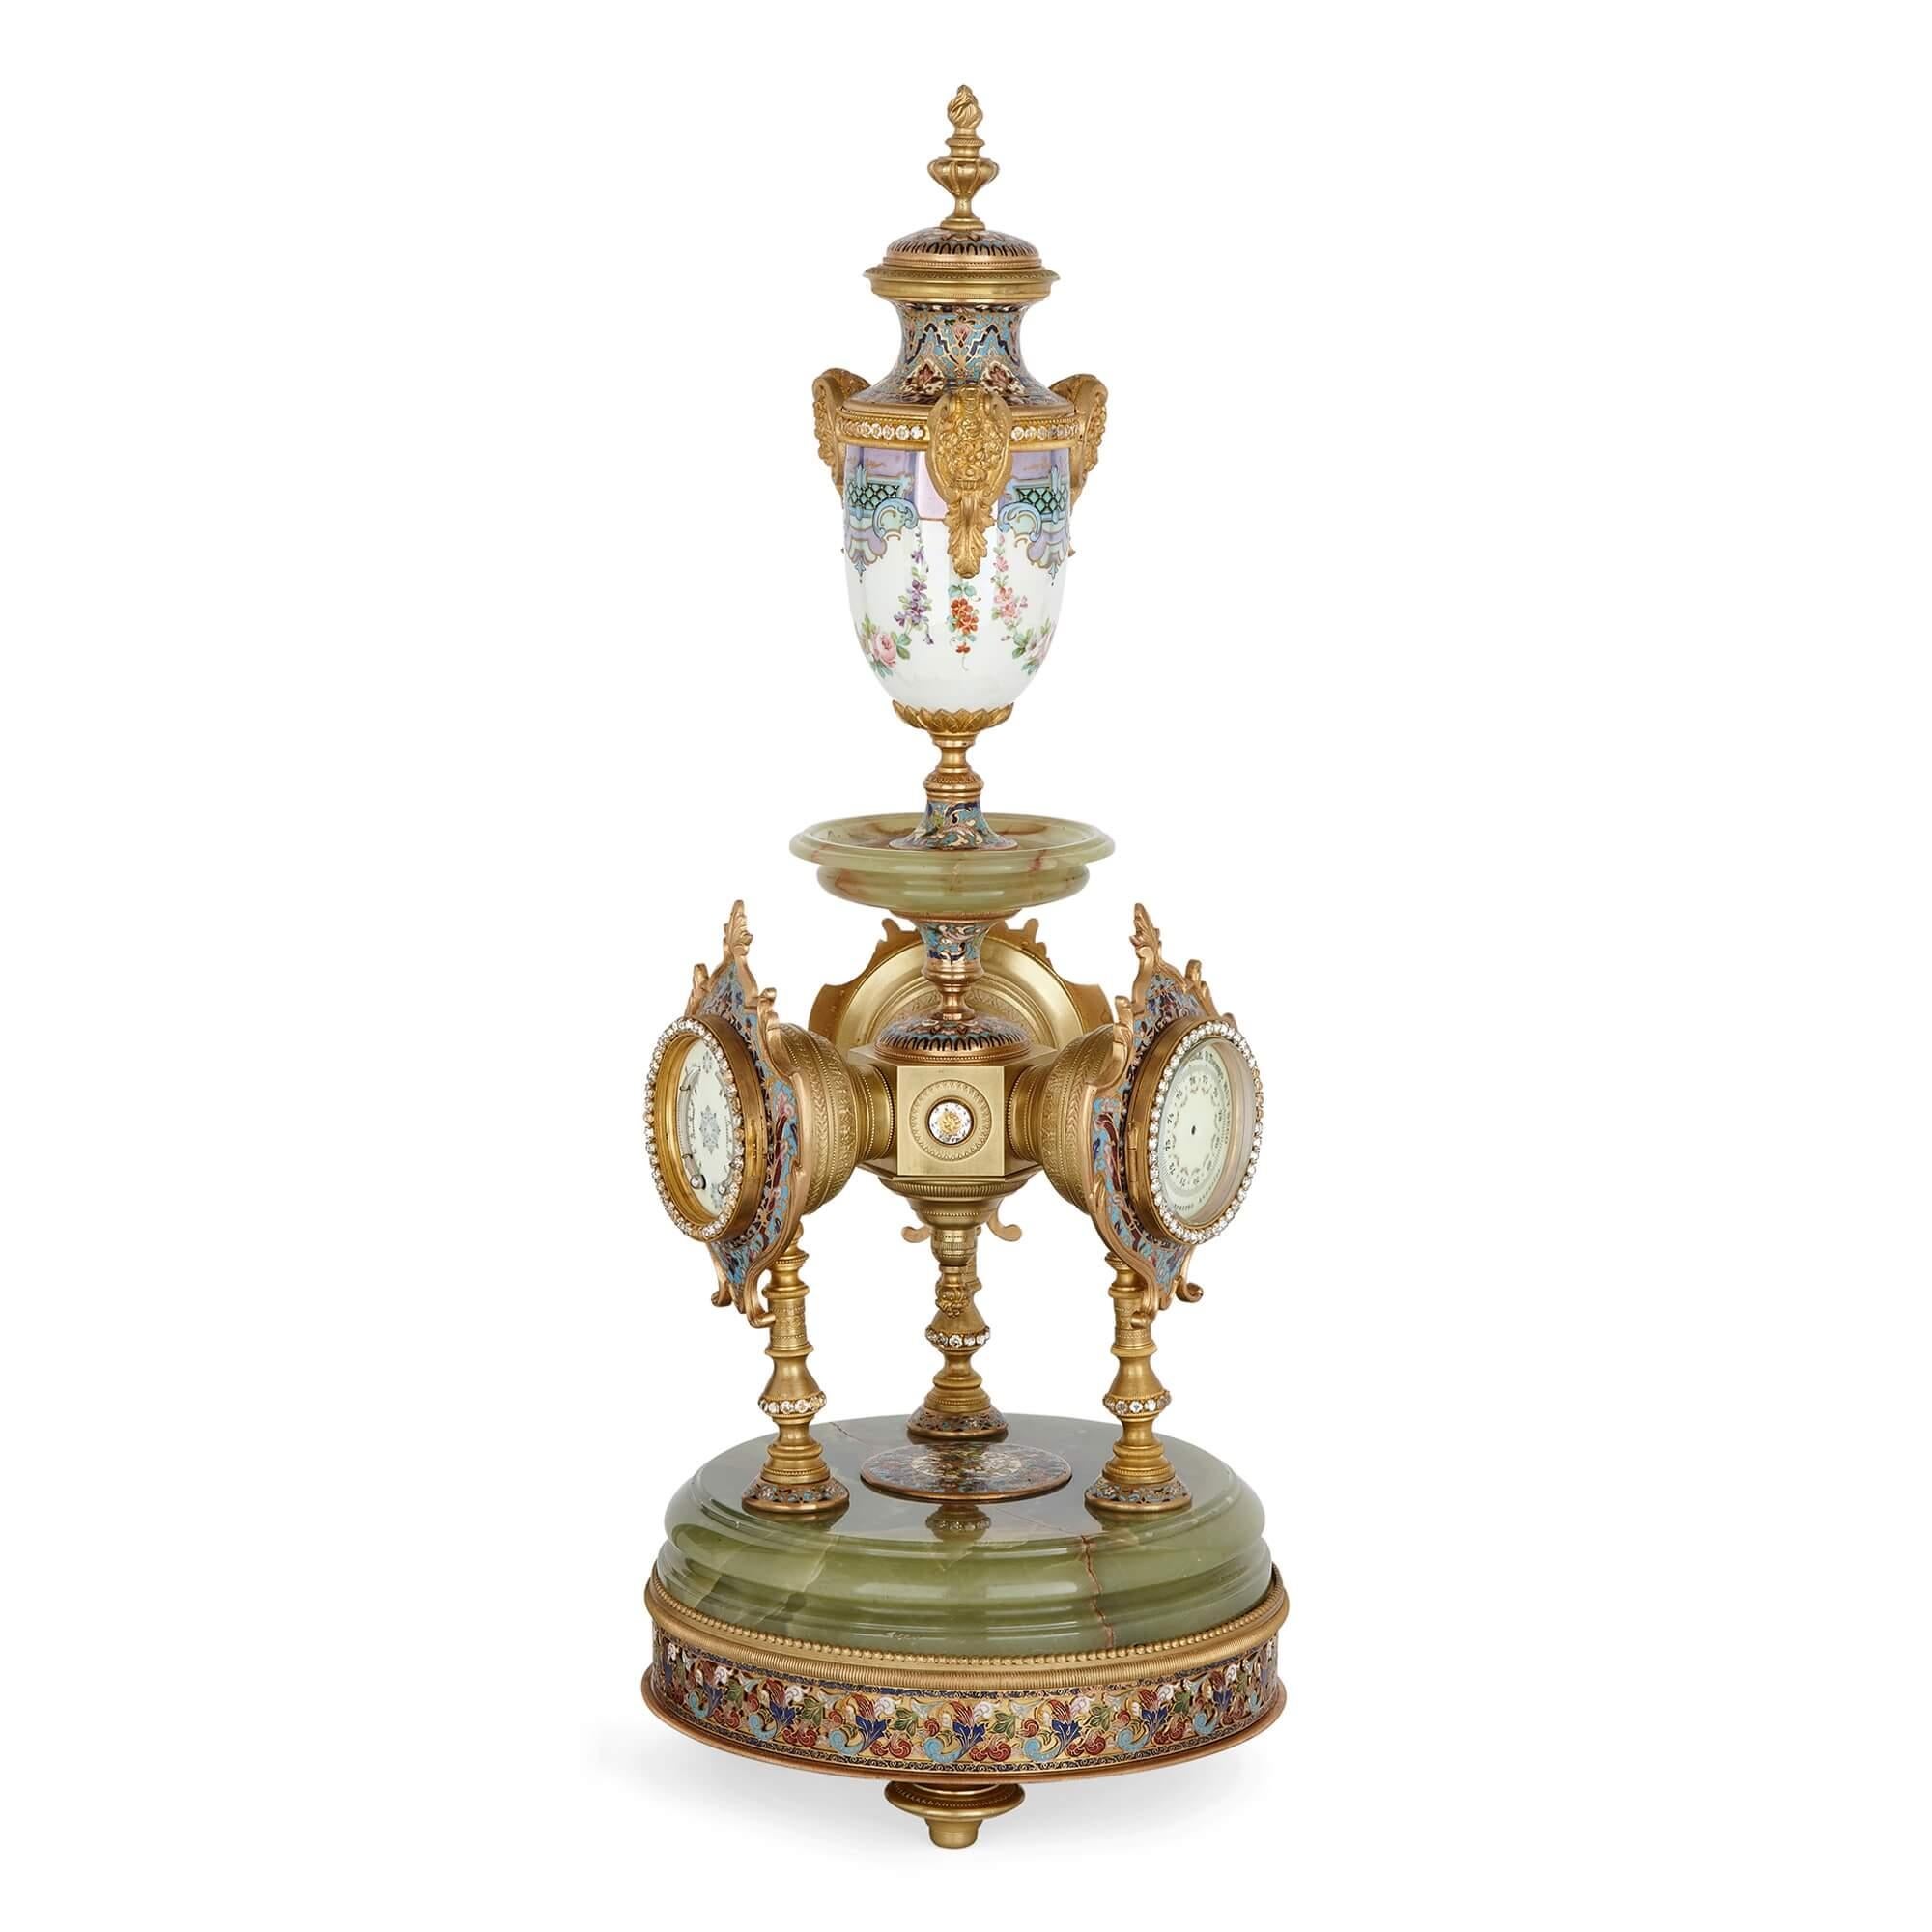 Très belle et rare pendule de cheminée en onyx vert, porcelaine, émail cloisonné et bronze doré.
Français, fin du 19ème siècle
Hauteur 64 cm, diamètre 23 cm

Cette magnifique pièce est une horloge de cheminée exceptionnellement inhabituelle et